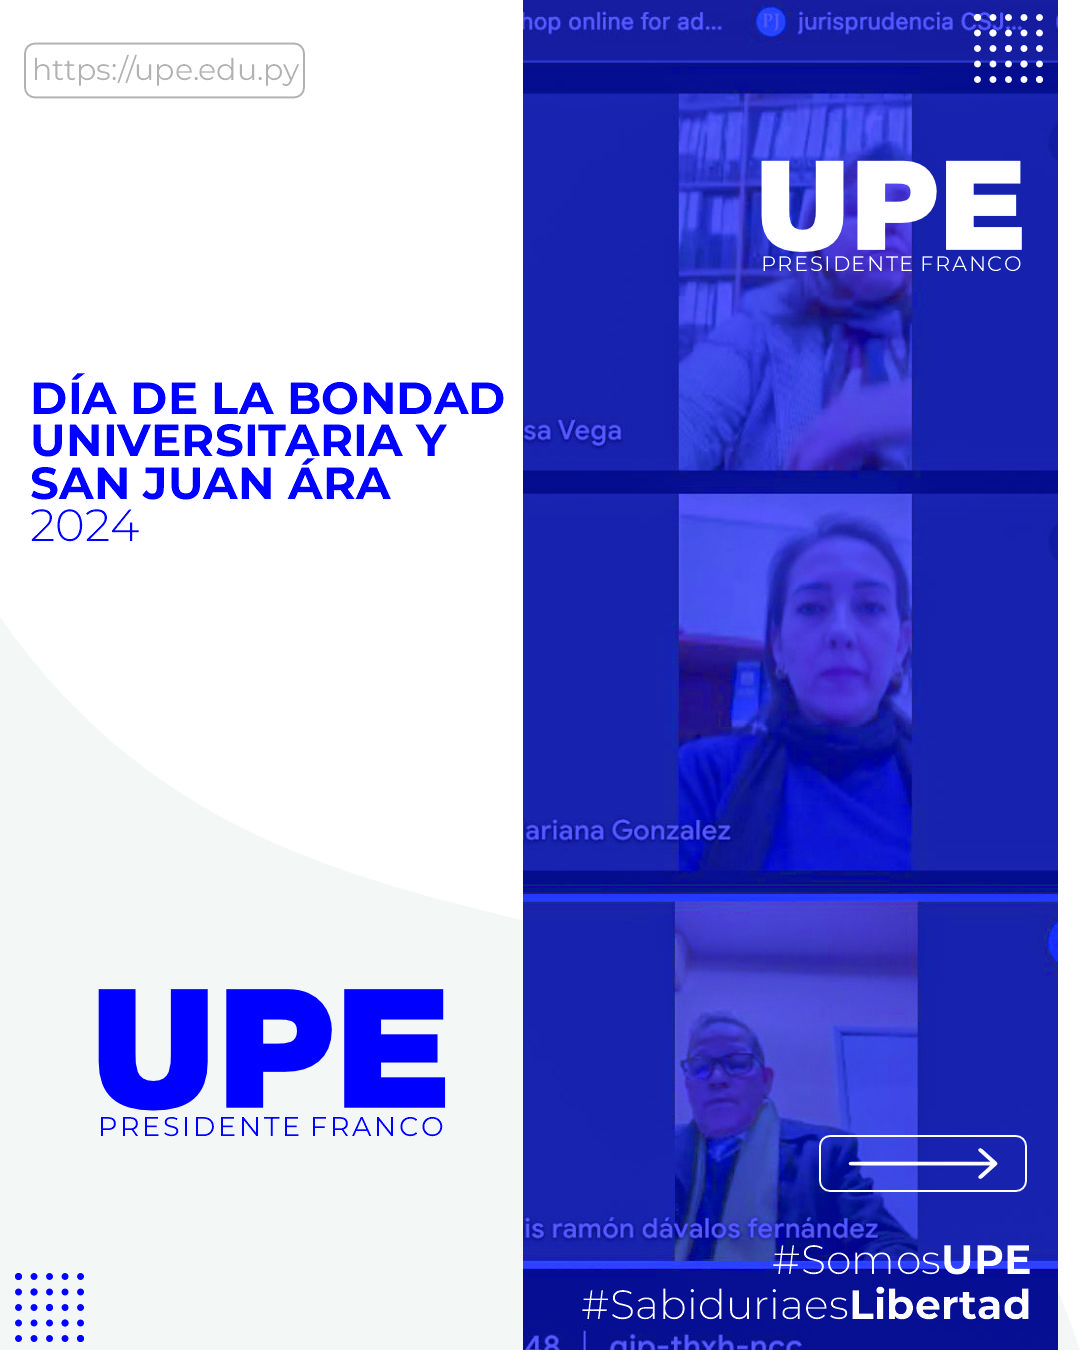 Dia de la Bondad Universitaria y San Juan Ára 2024 en la UPE